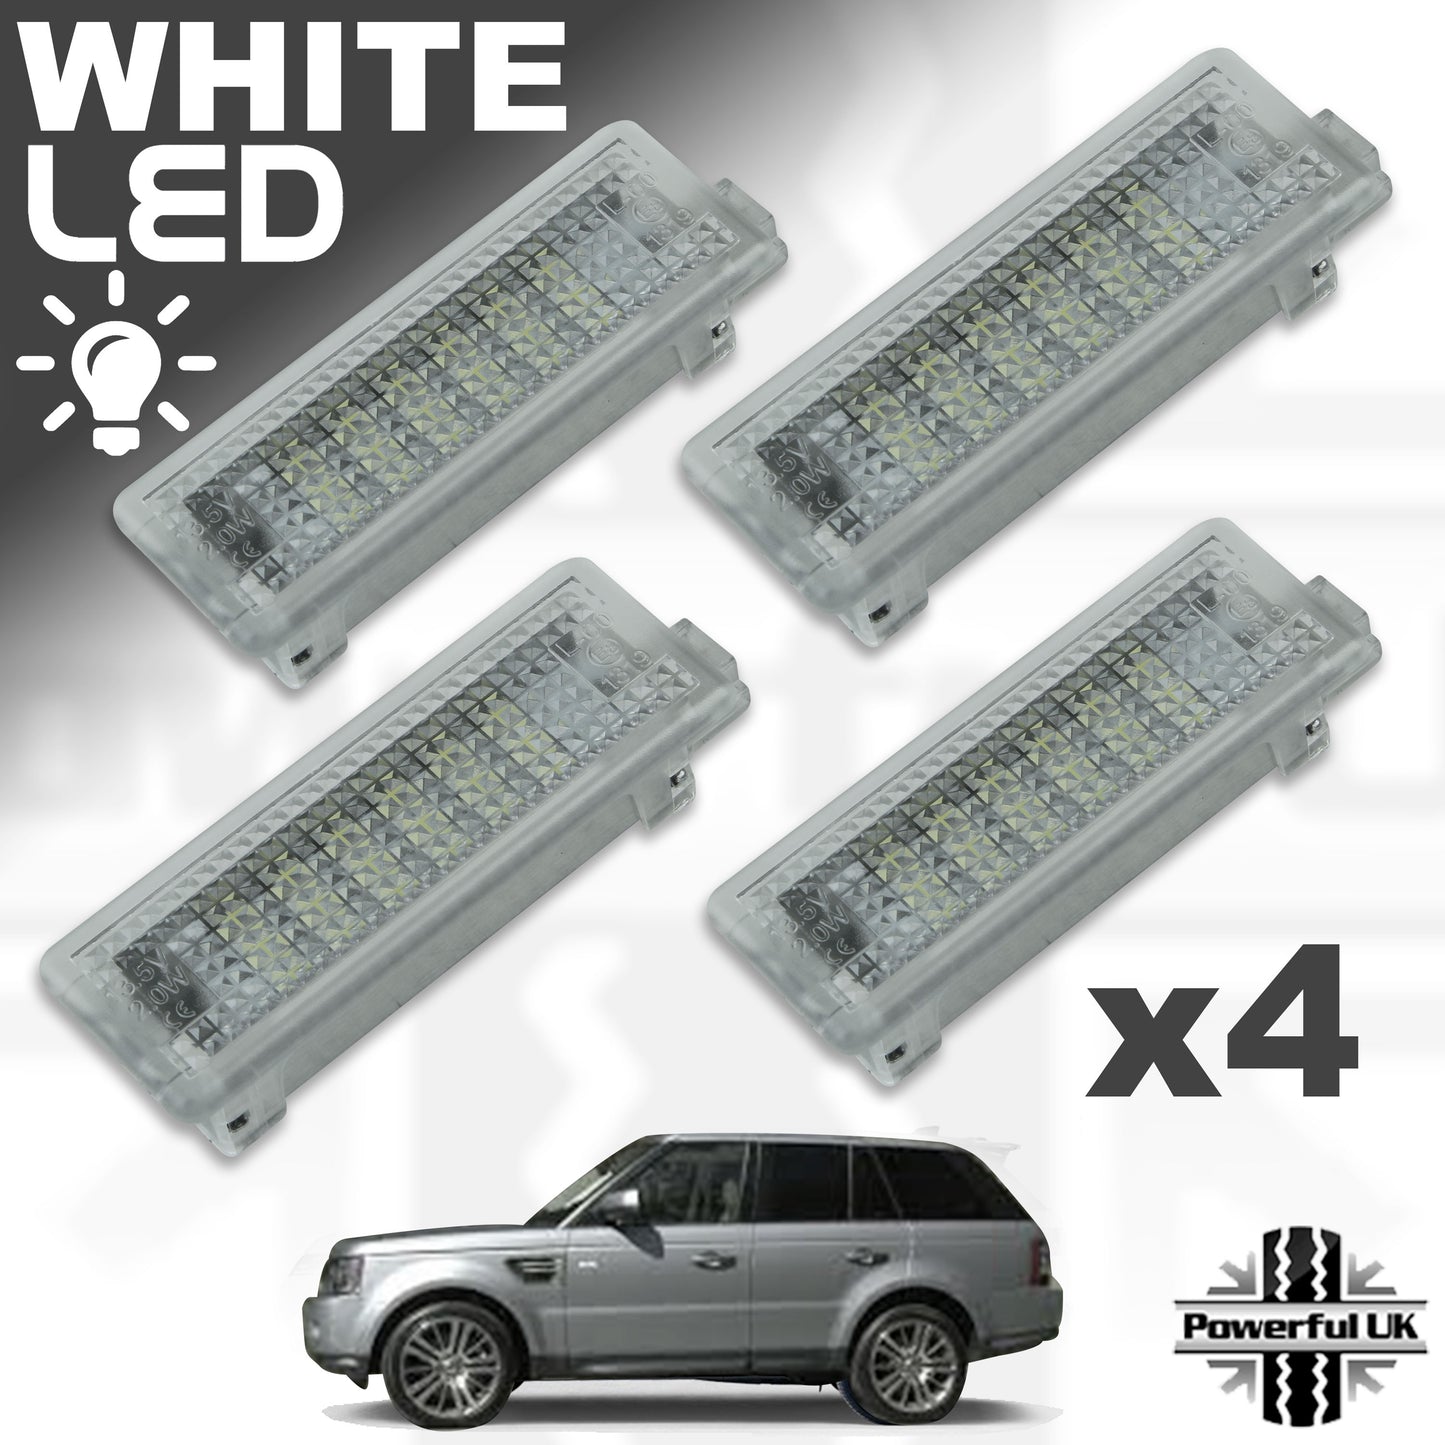 WHITE LED Door Courtesy Lights for Range Rover Sport L320 (4pc)